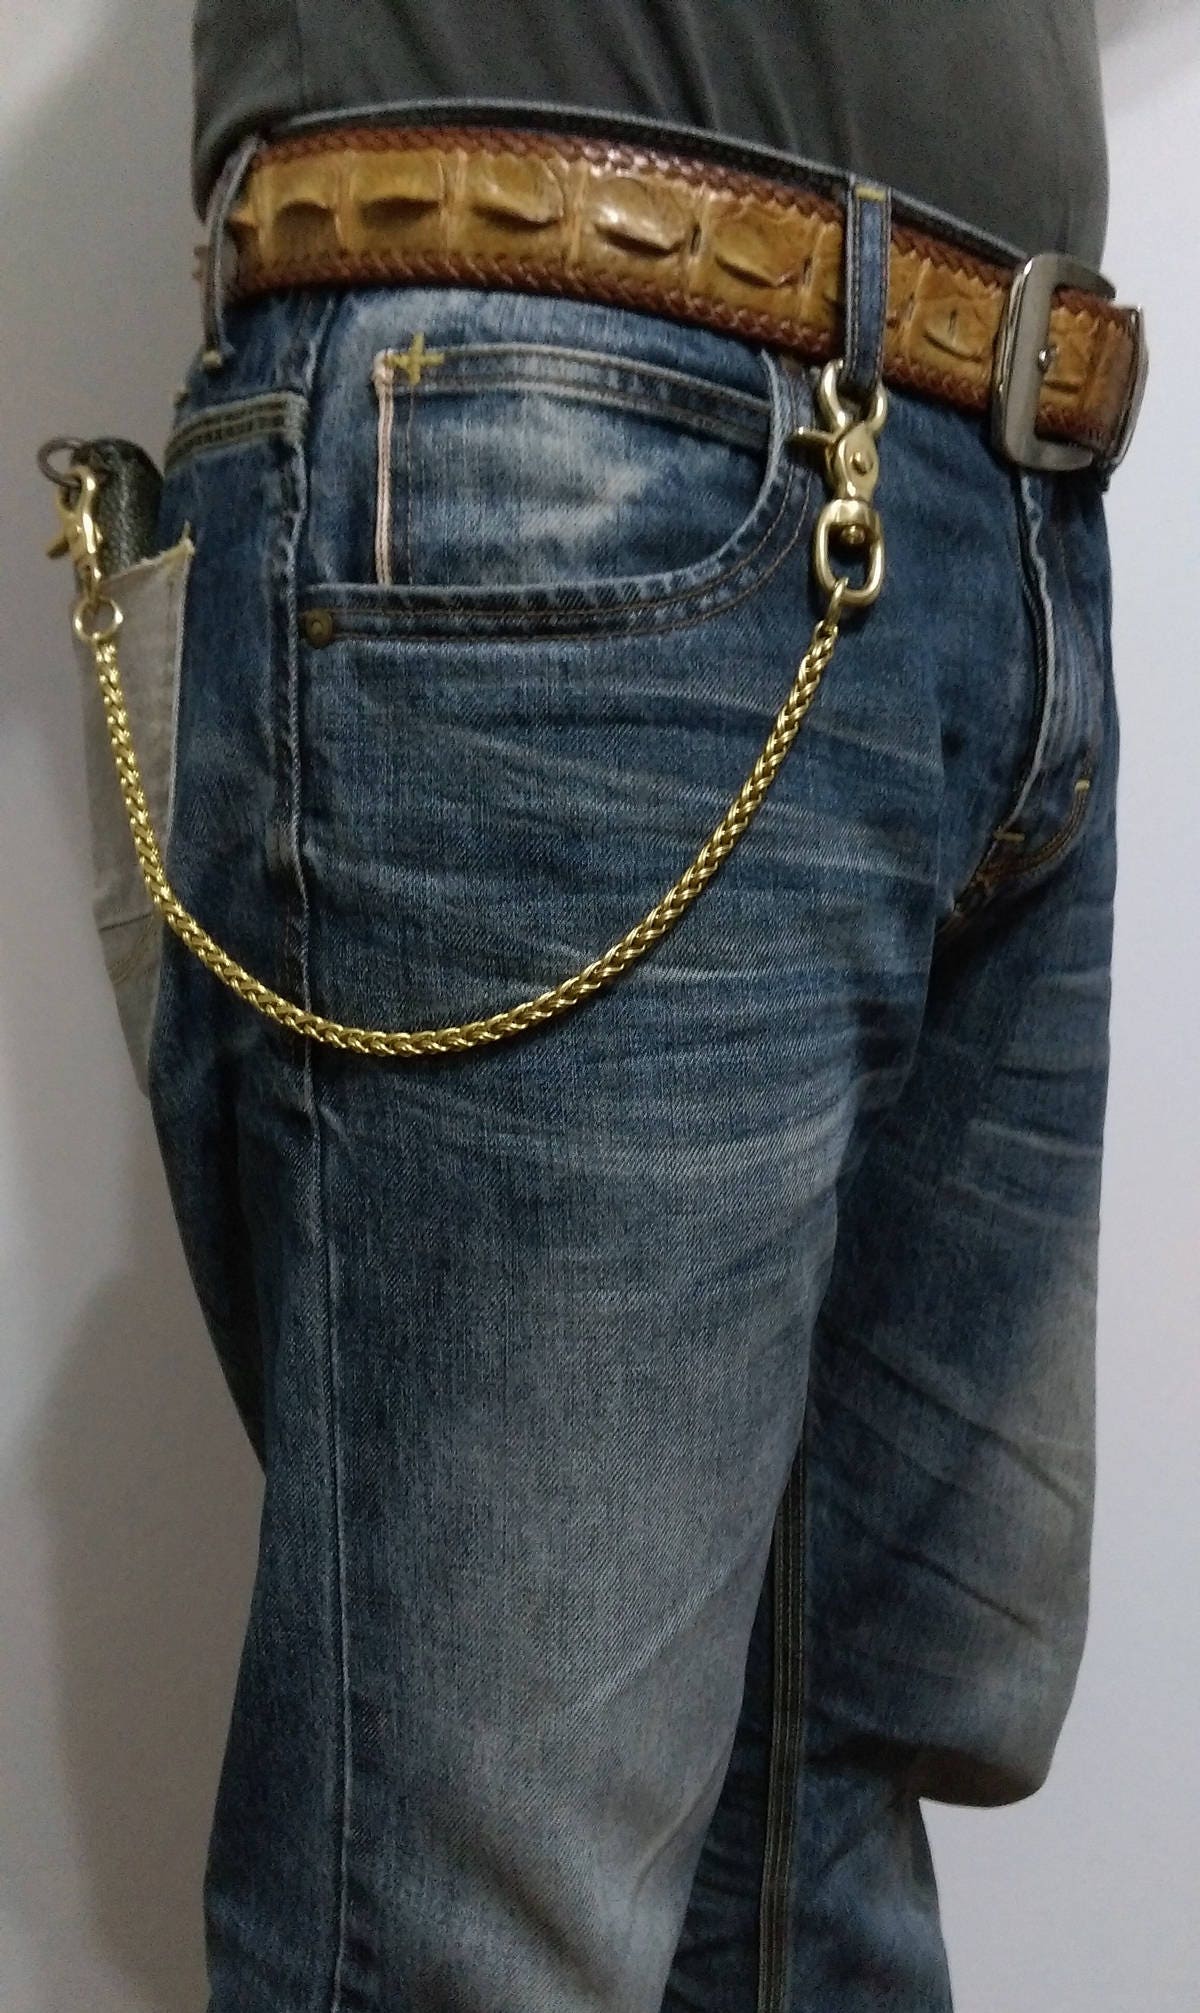 KAEVUD 3 Pieces Jeans Chains Wallet Pant Chain Hip Hop Wallet